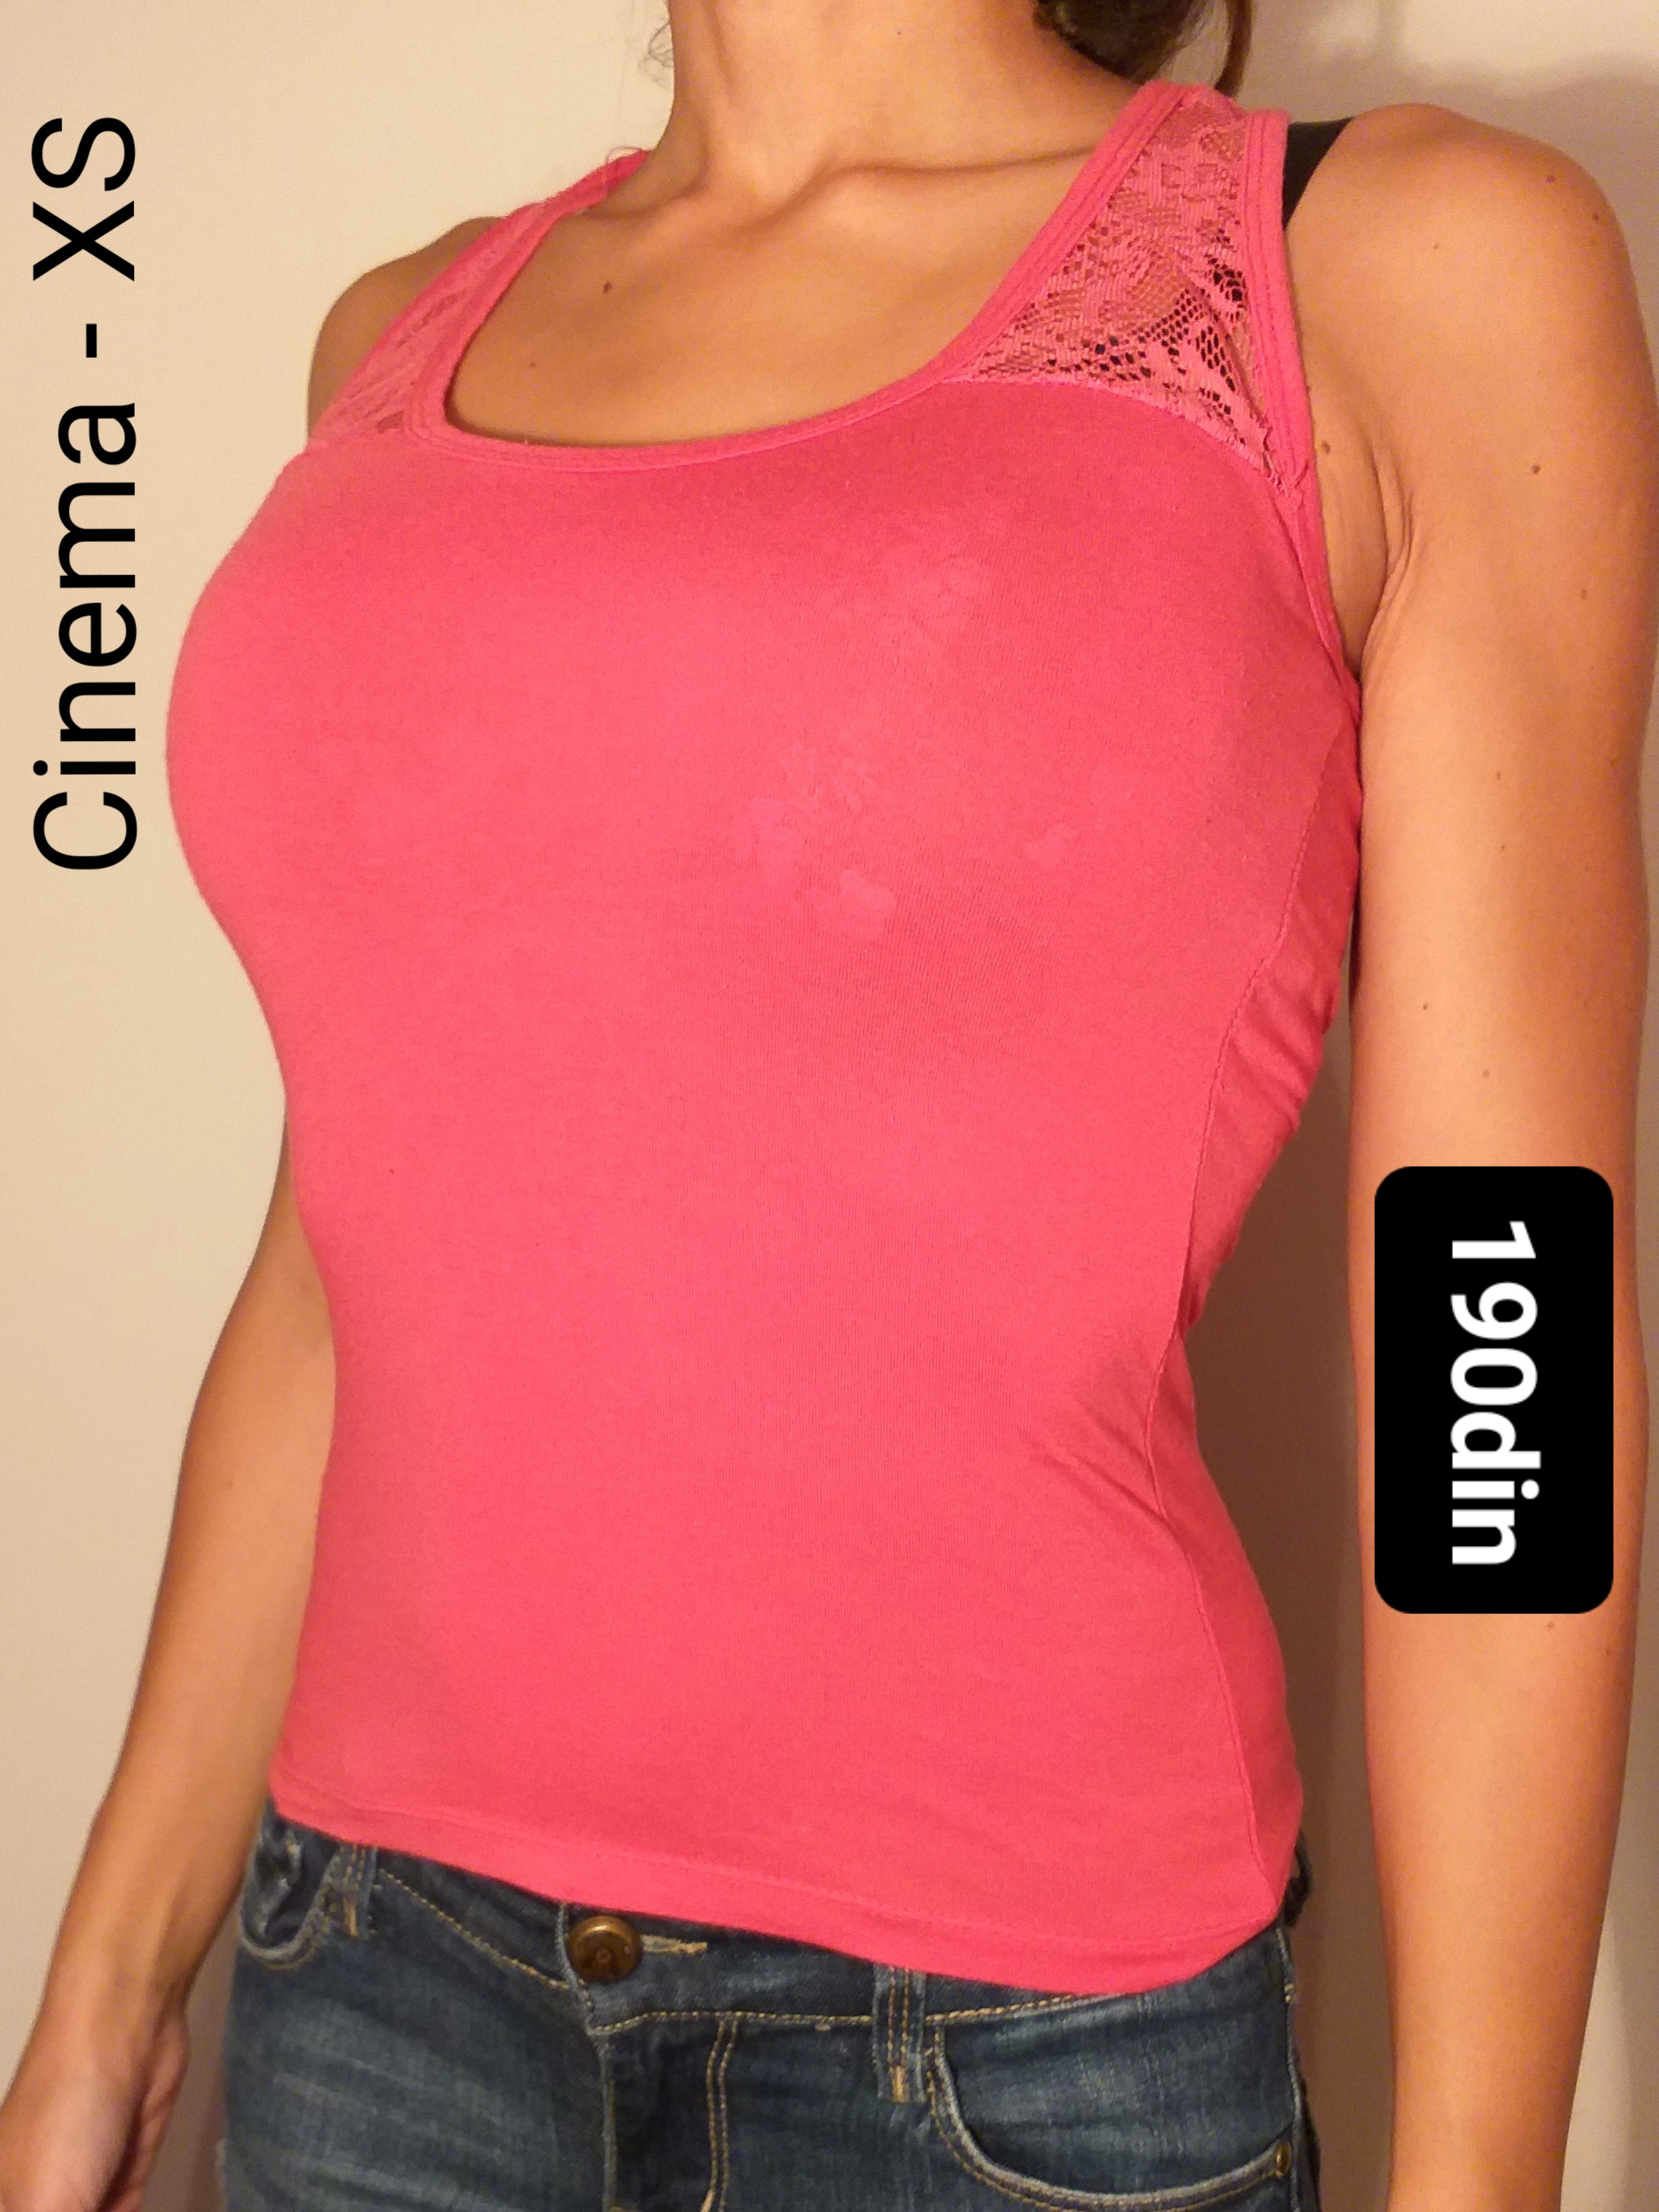 Cinema ženska majica na bretele roze XS/34